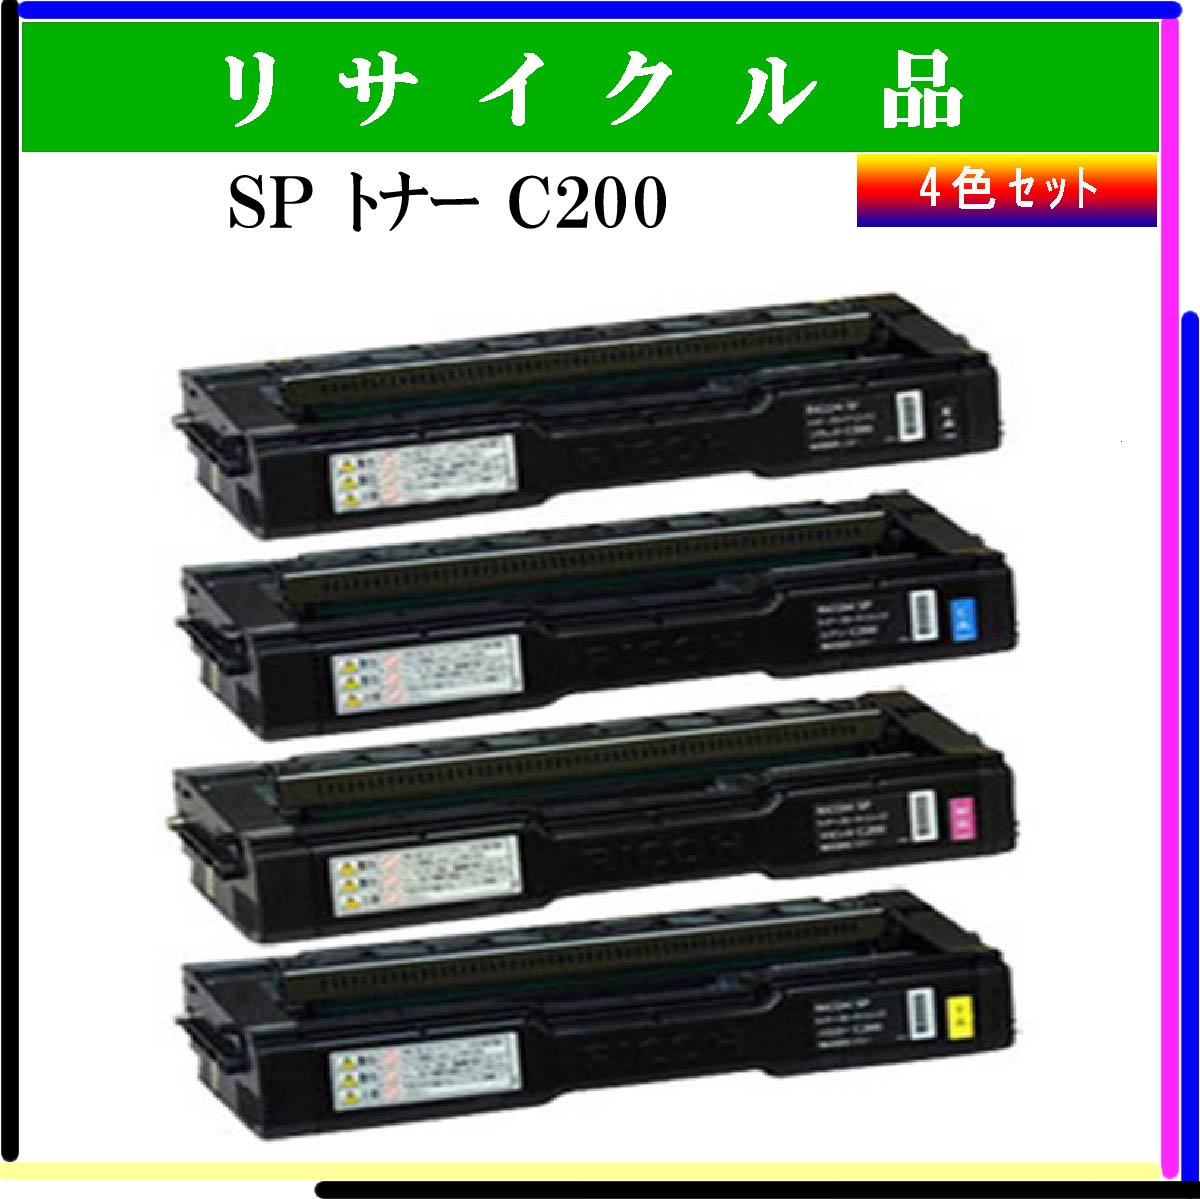 SP ﾄﾅｰ C200 (4色ｾｯﾄ)